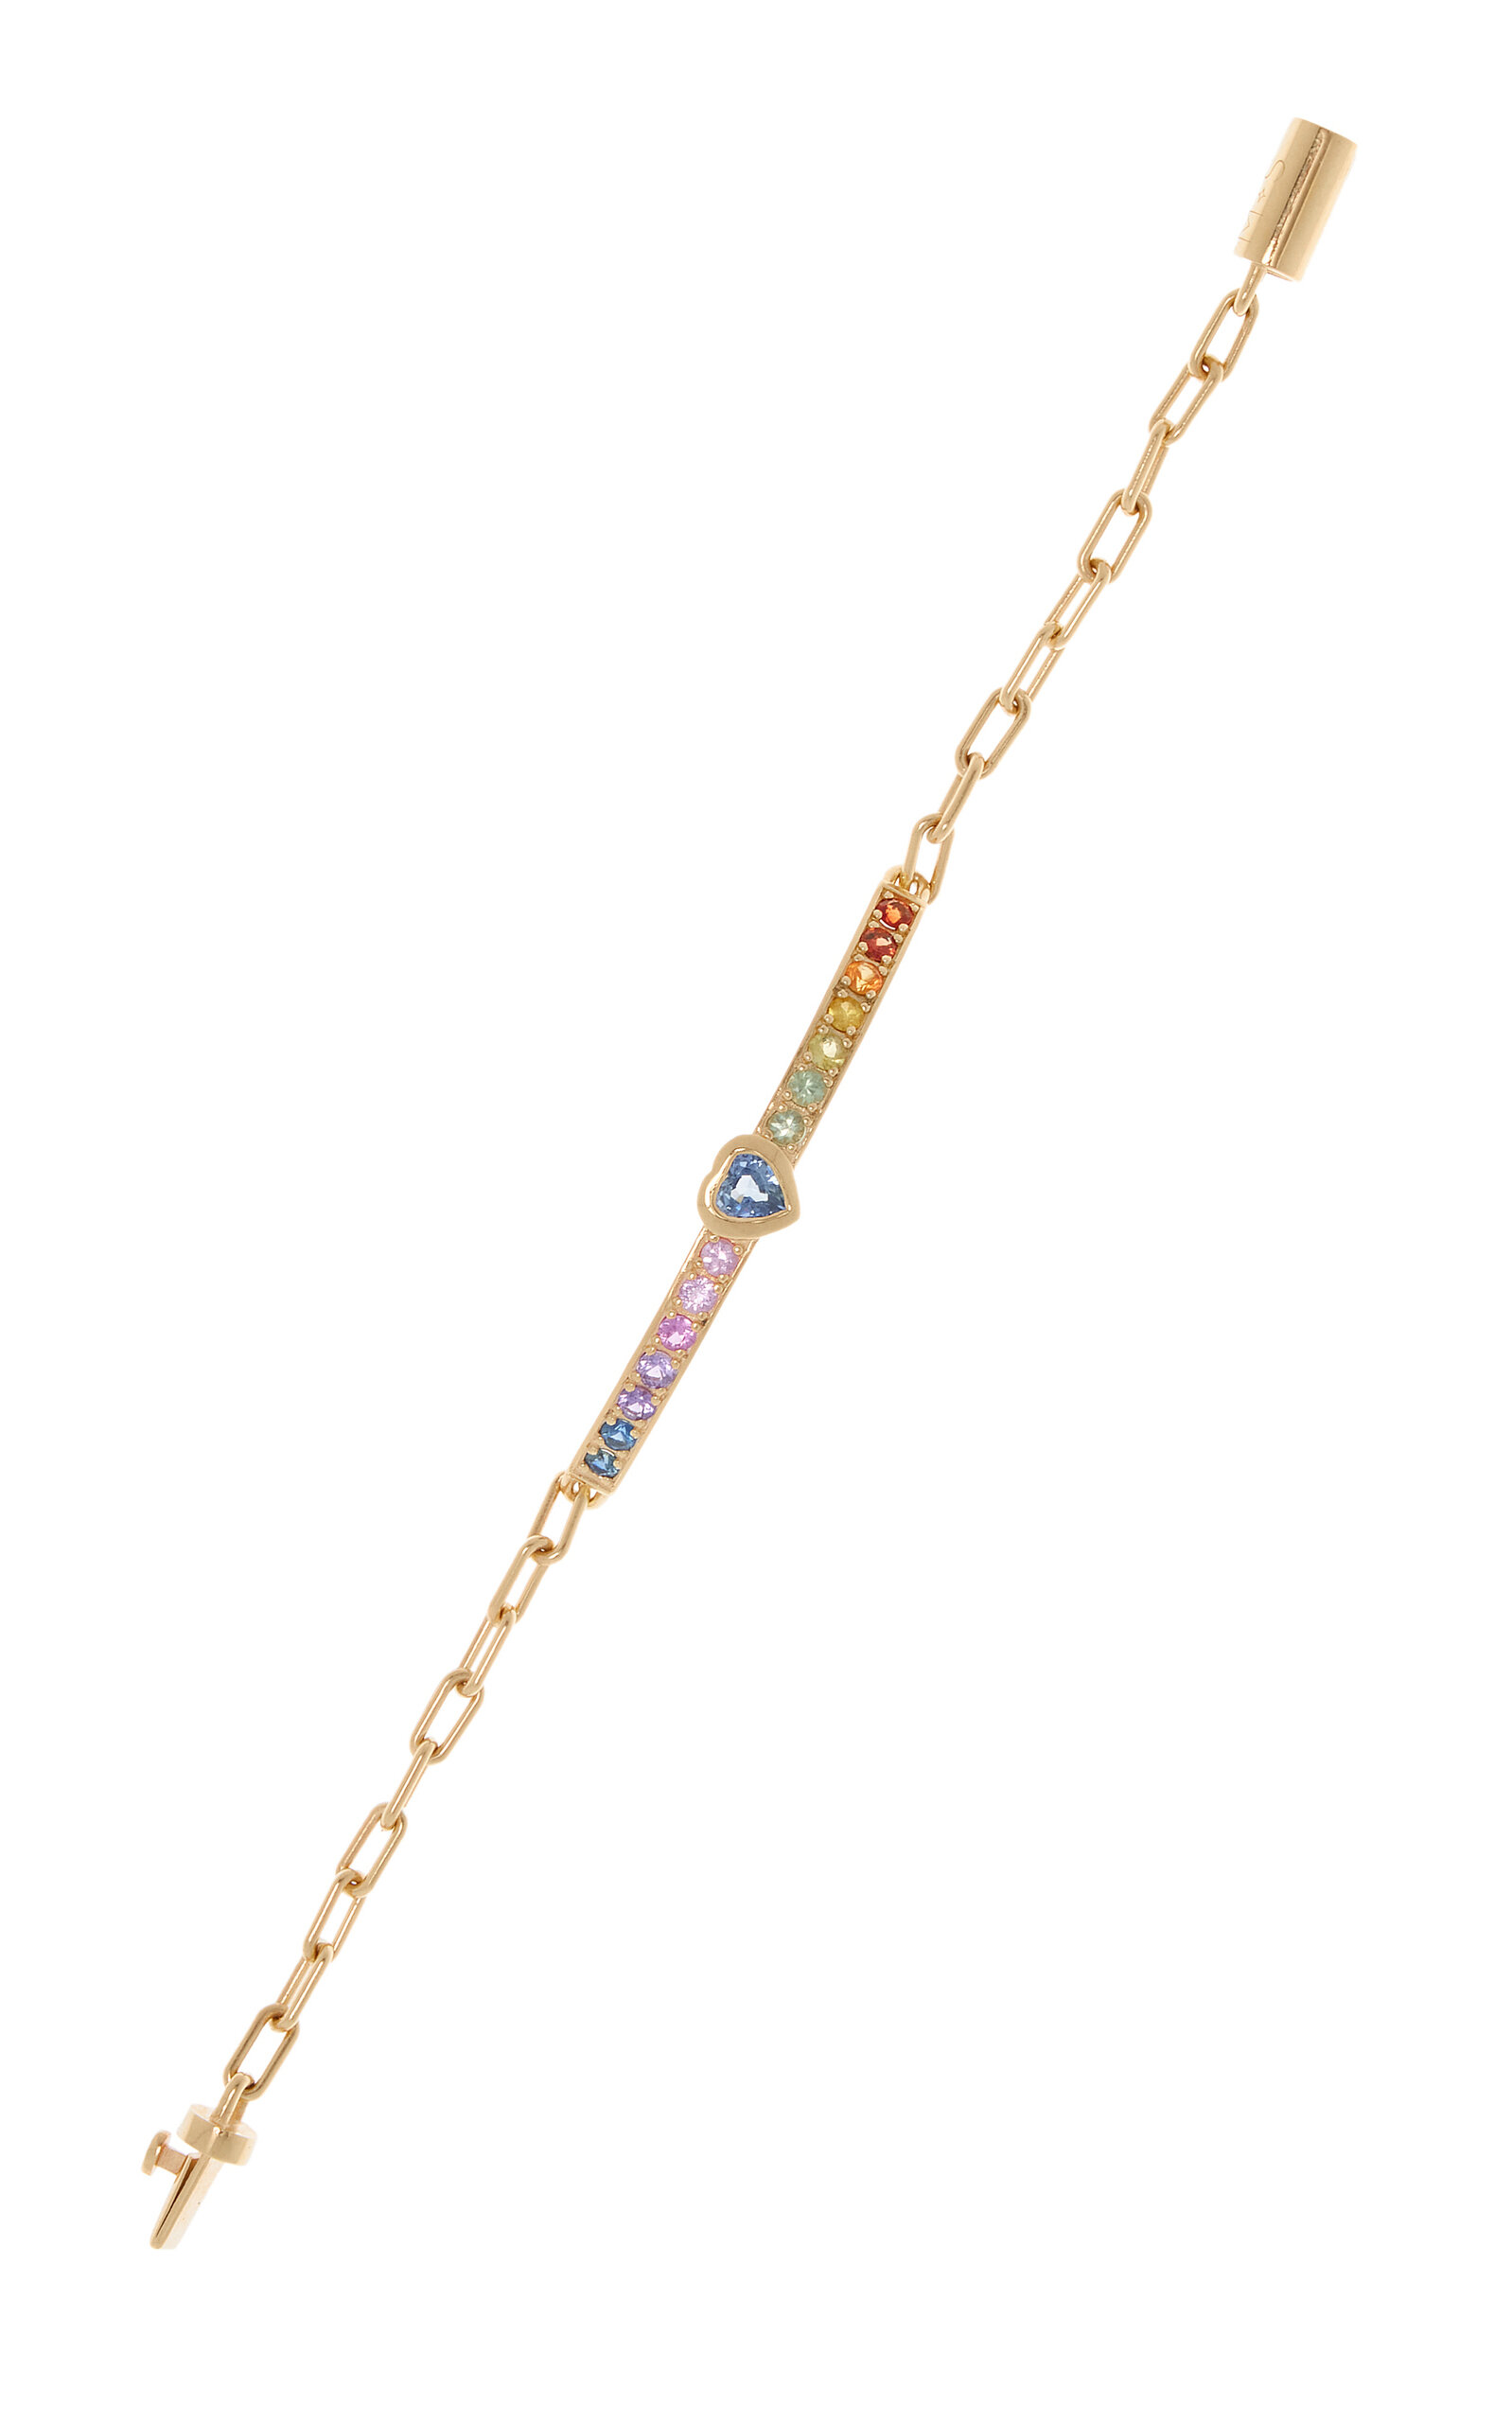 M.spalten Women's Single Stone Gem Id 14k Yellow Gold Sapphire Bracelet